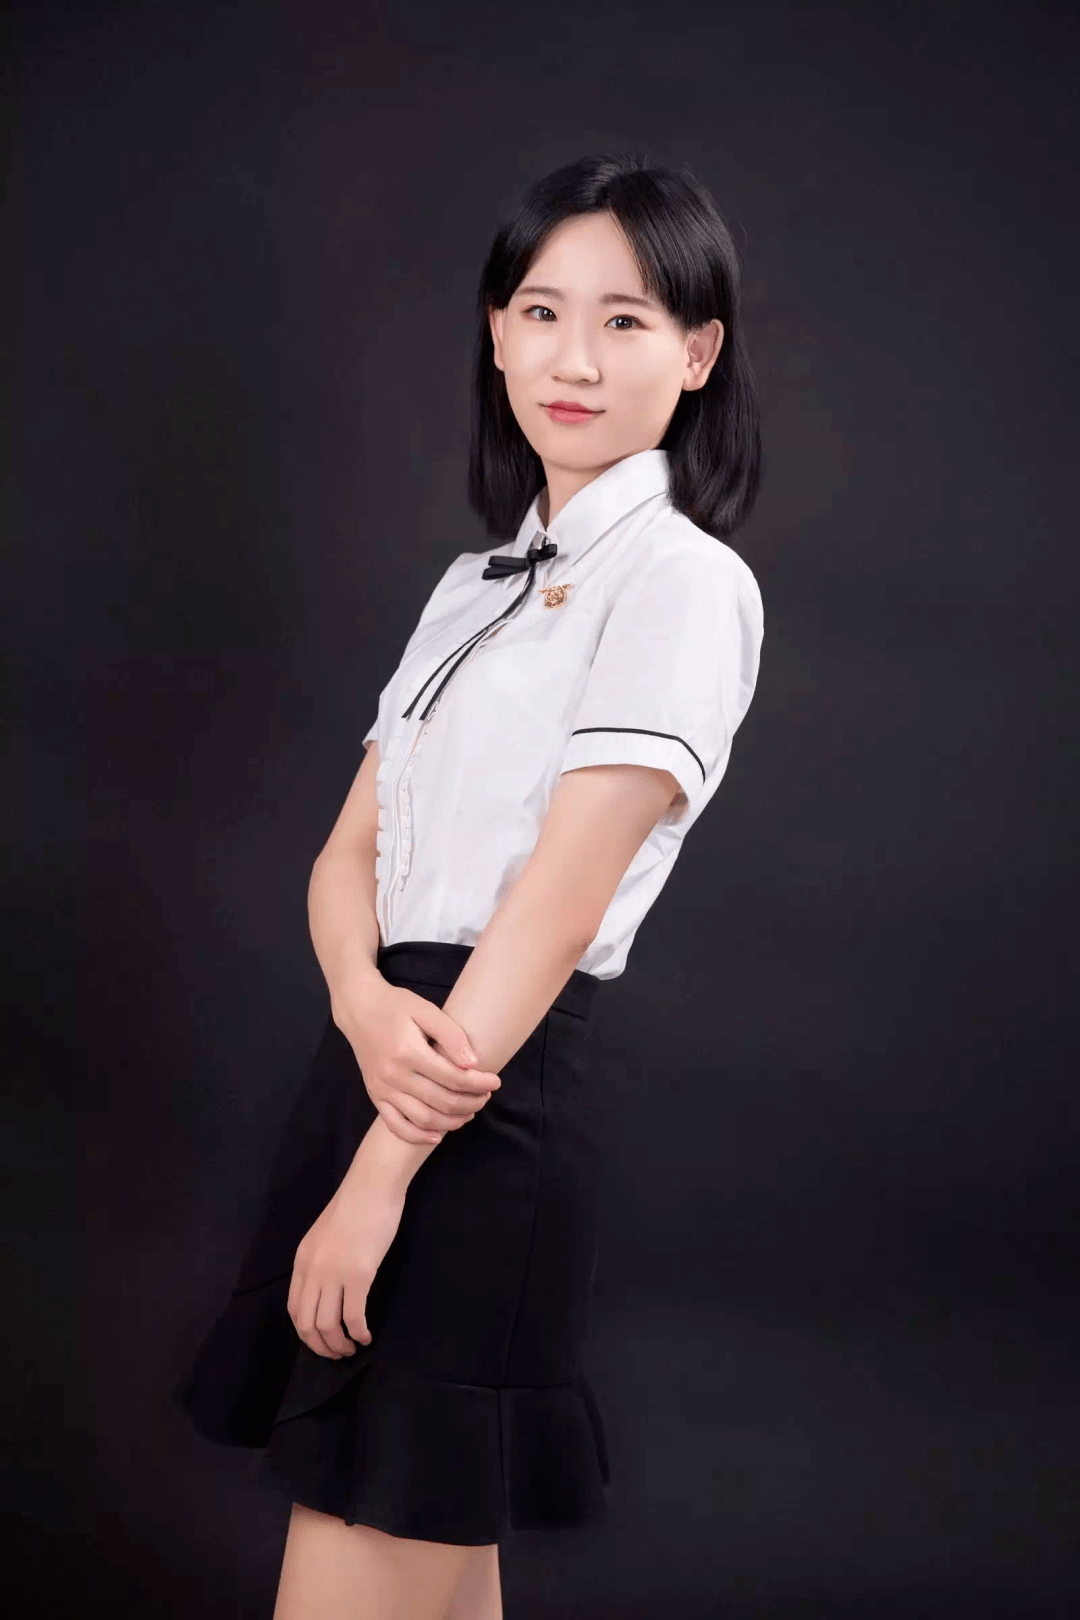 2018年5月加入荆州枫叶国际学校,从事初小英语教育教学工作